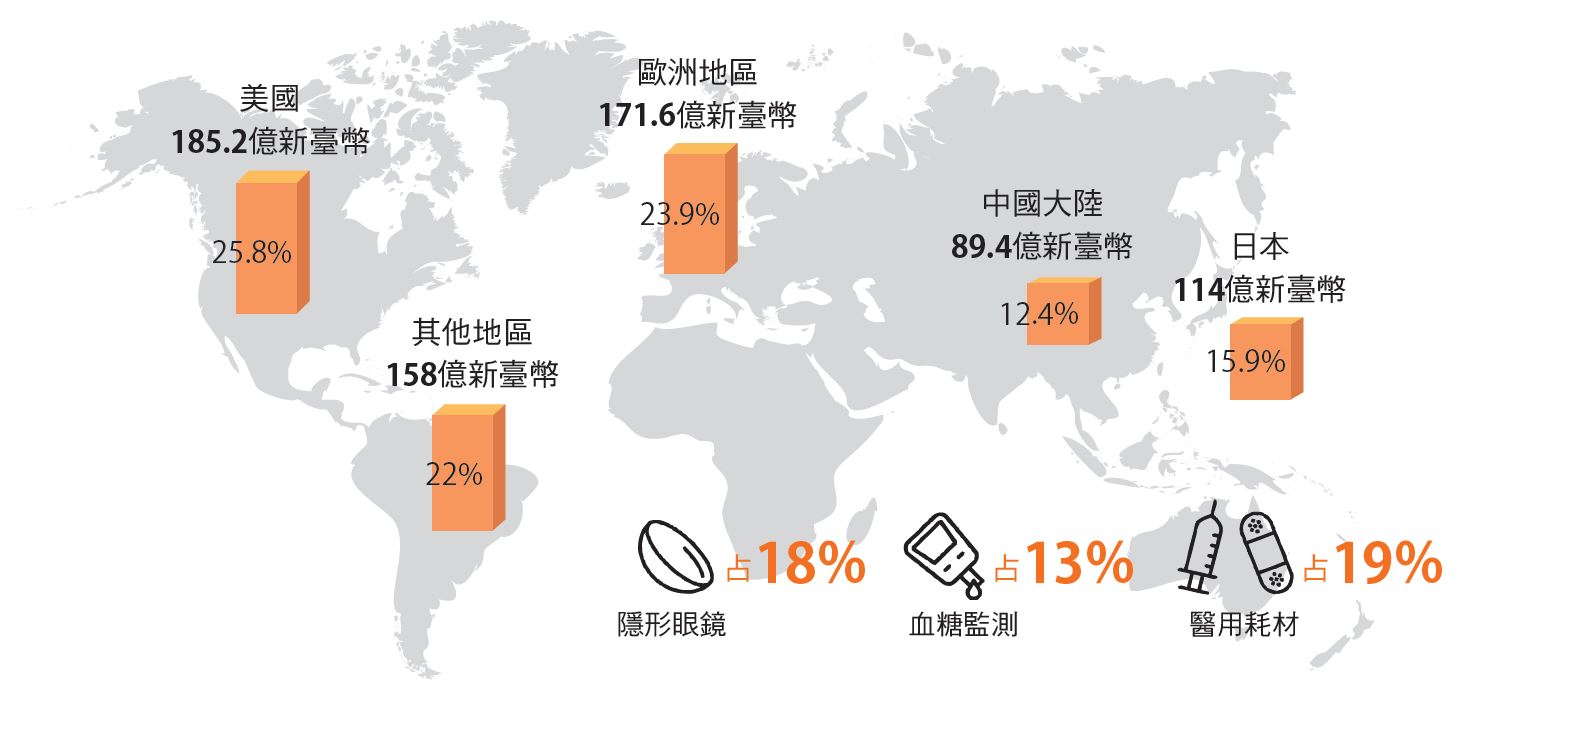 臺灣醫材廠商大多在臺灣生產製造，再行銷至歐美日市場。